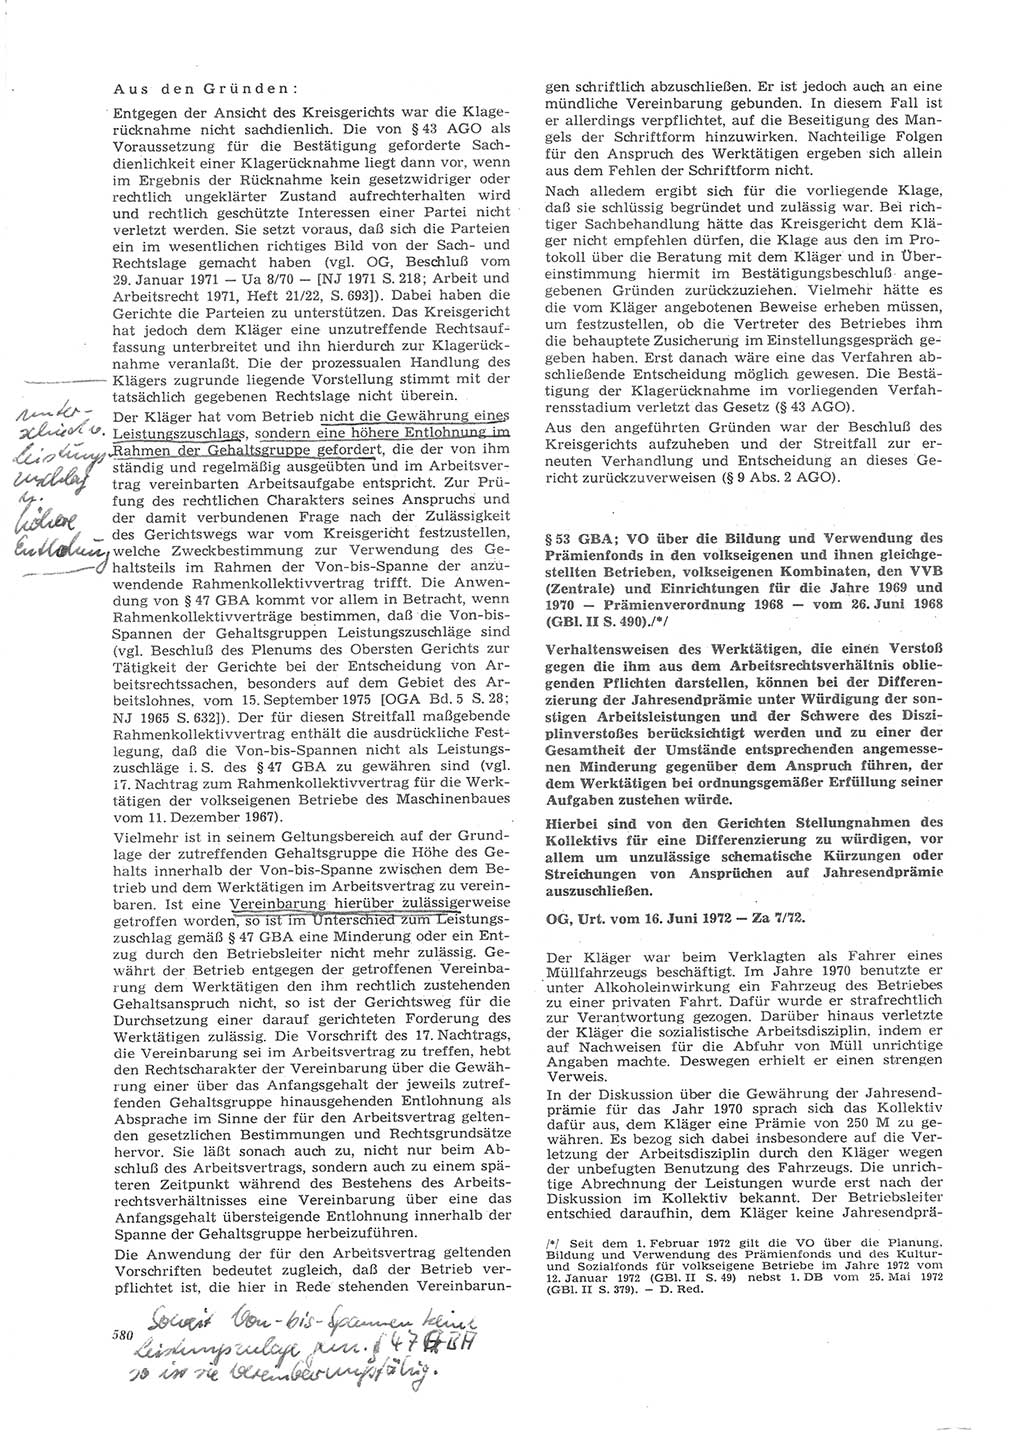 Neue Justiz (NJ), Zeitschrift für Recht und Rechtswissenschaft [Deutsche Demokratische Republik (DDR)], 26. Jahrgang 1972, Seite 580 (NJ DDR 1972, S. 580)